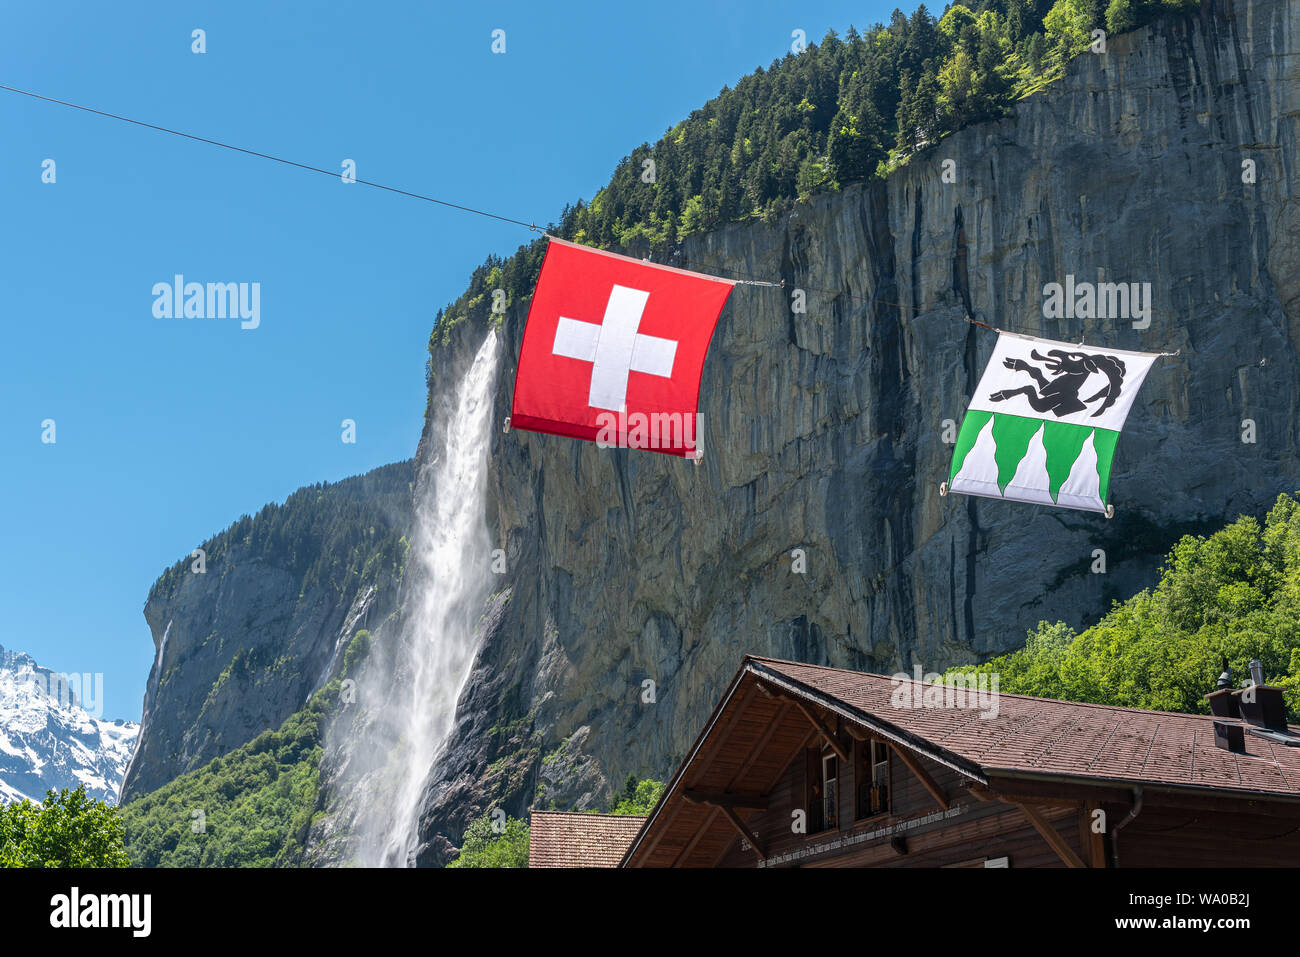 Drapeau suisse et drapeau municipal de Lauterbrunnen en avant du Staubbach, Grindelwald, Oberland Bernois, Suisse, Europe Banque D'Images